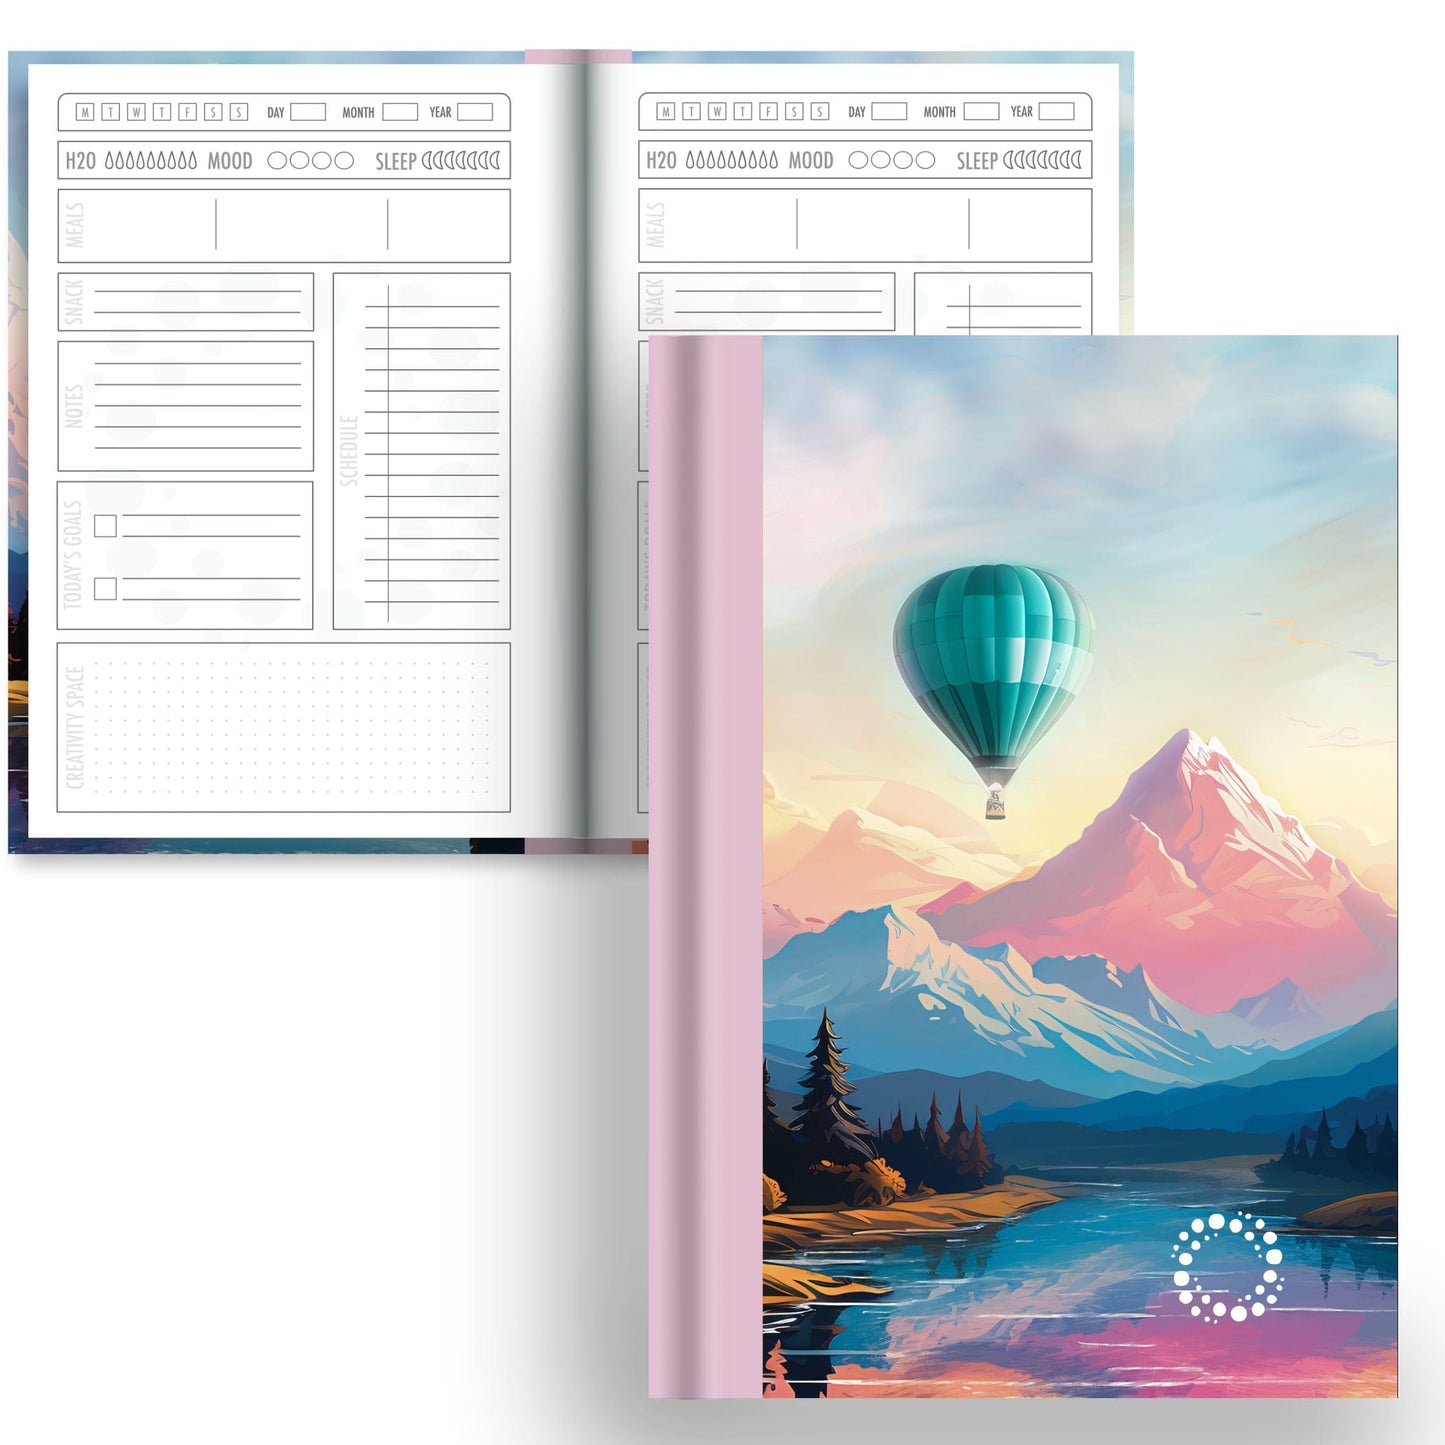 DayDot Journals A5 Notebook Daily Planner Zephyr - A5 Hardback Notebook